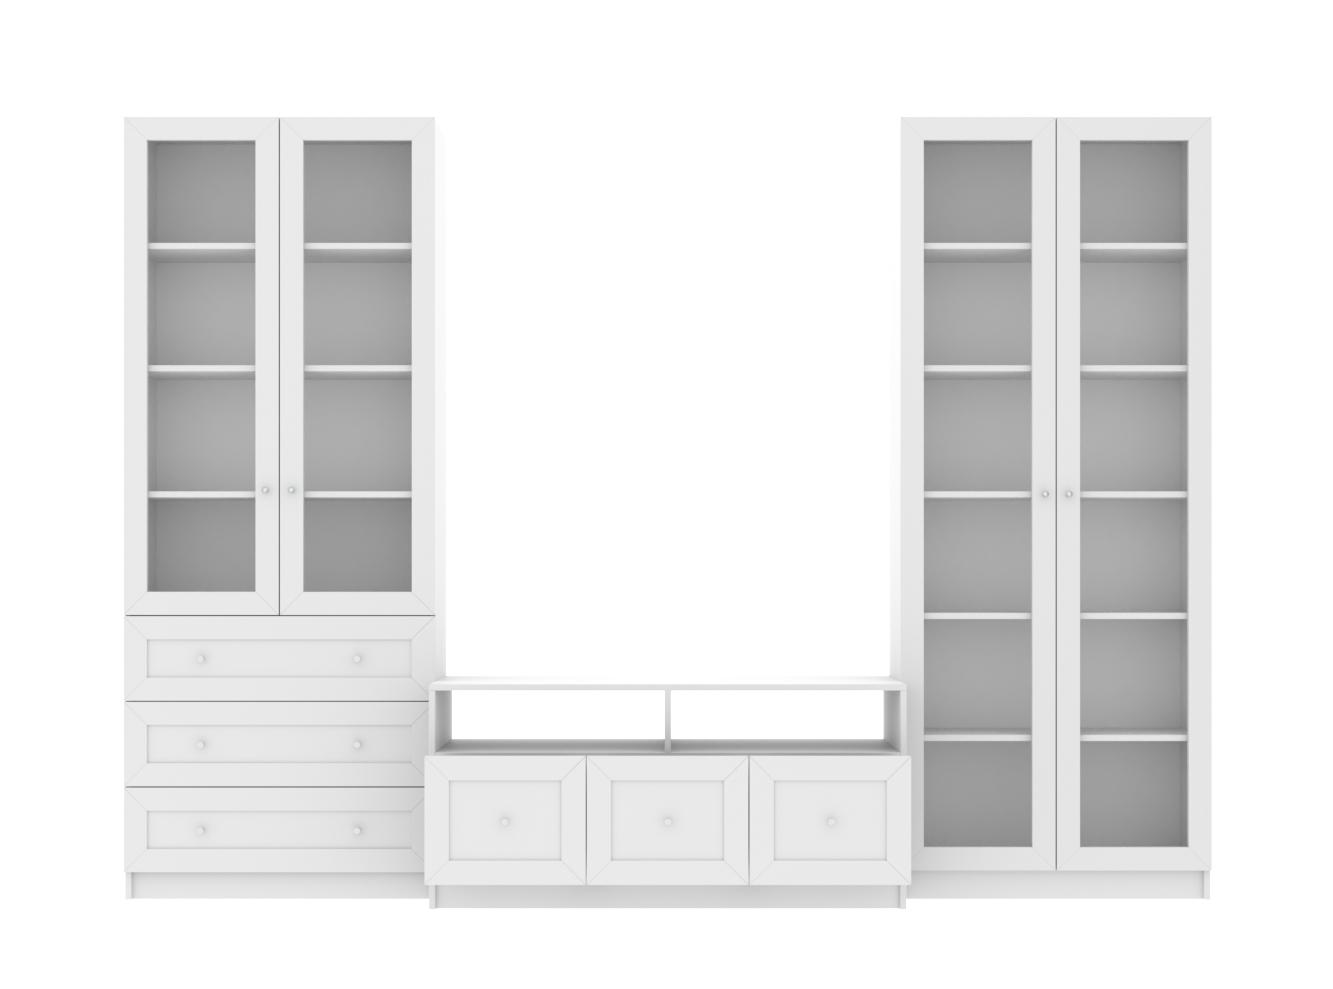 Изображение товара Книжный шкаф Билли 58 white ИКЕА (IKEA), 280x40x202 см на сайте adeta.ru